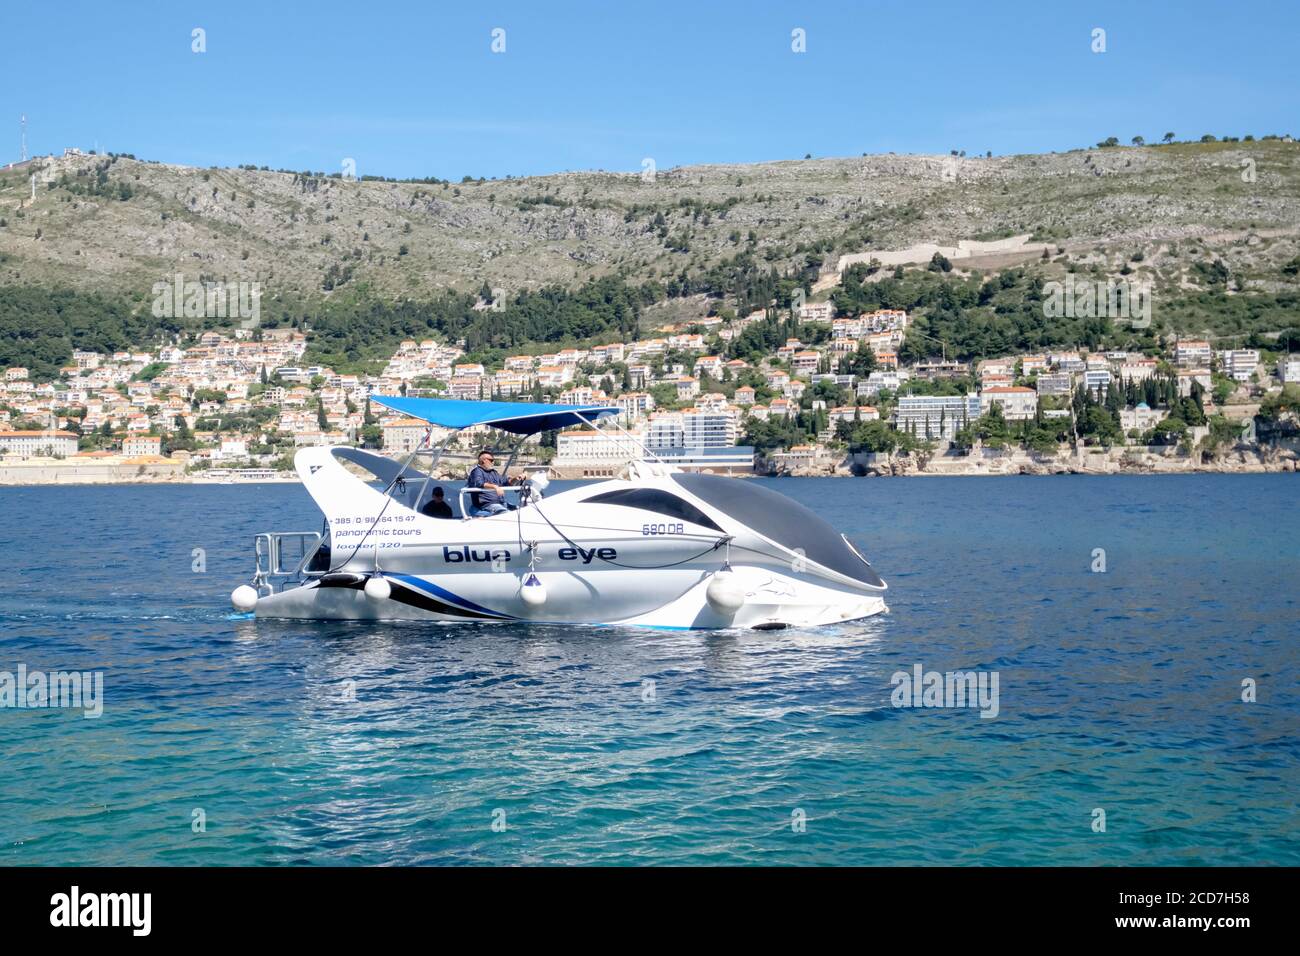 El barco con fondo de cristal, el Blue Eye que lleva a los turistas en un viaje en barco cerca de Dubrovnik, Croacia Foto de stock